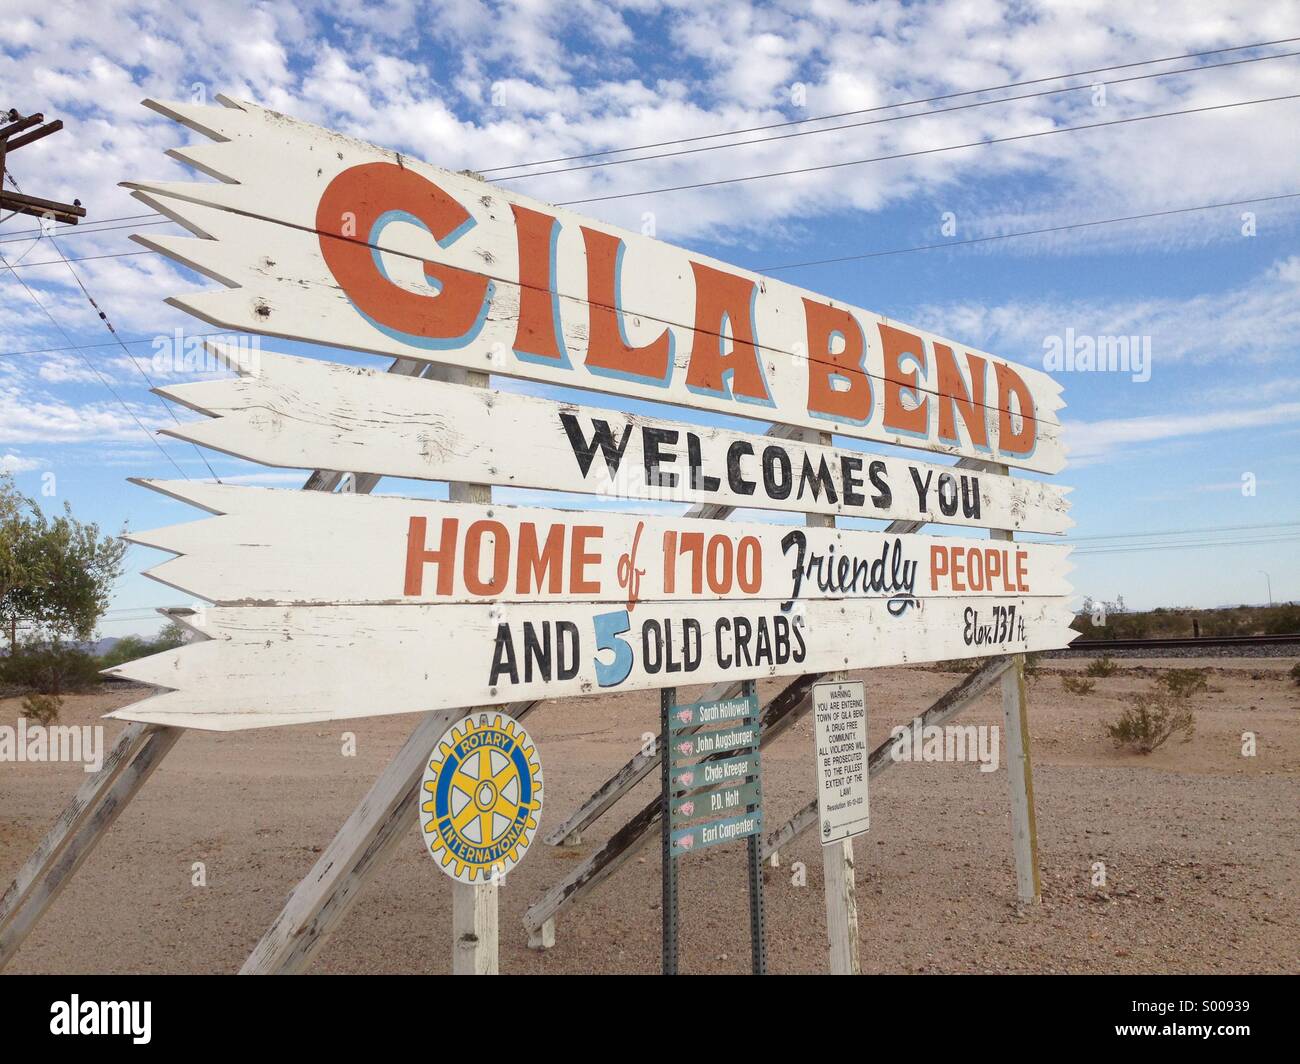 Cartel de bienvenida por autopista, entrando en el pueblo de Gila Bend, Arizona Foto de stock